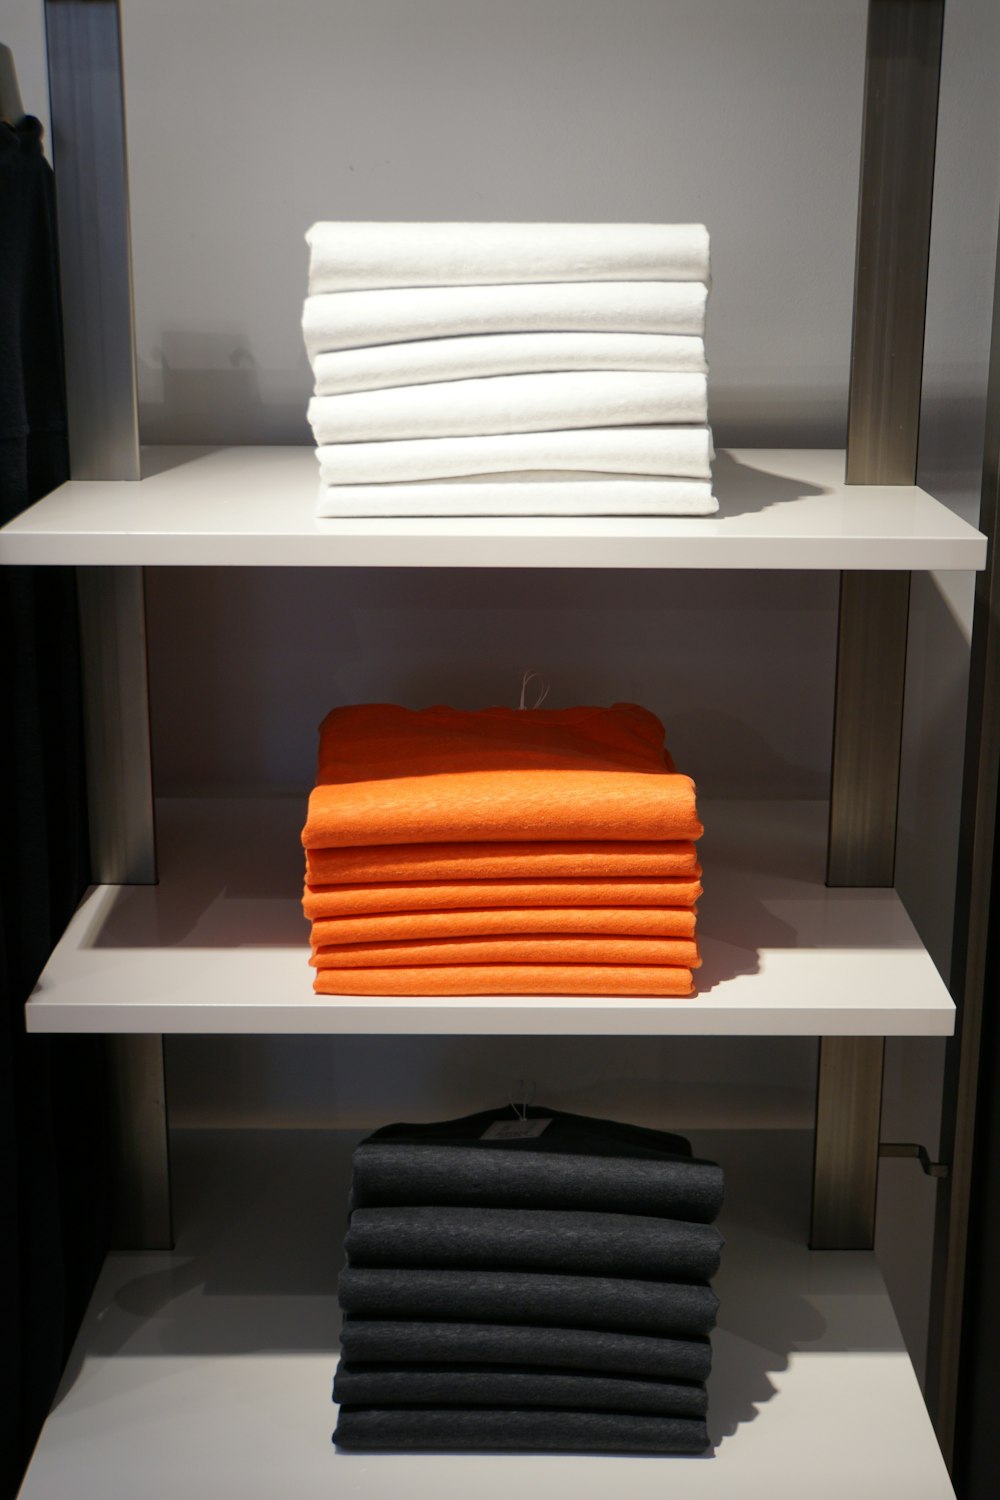 serviettes blanches et oranges sur étagère en bois blanc